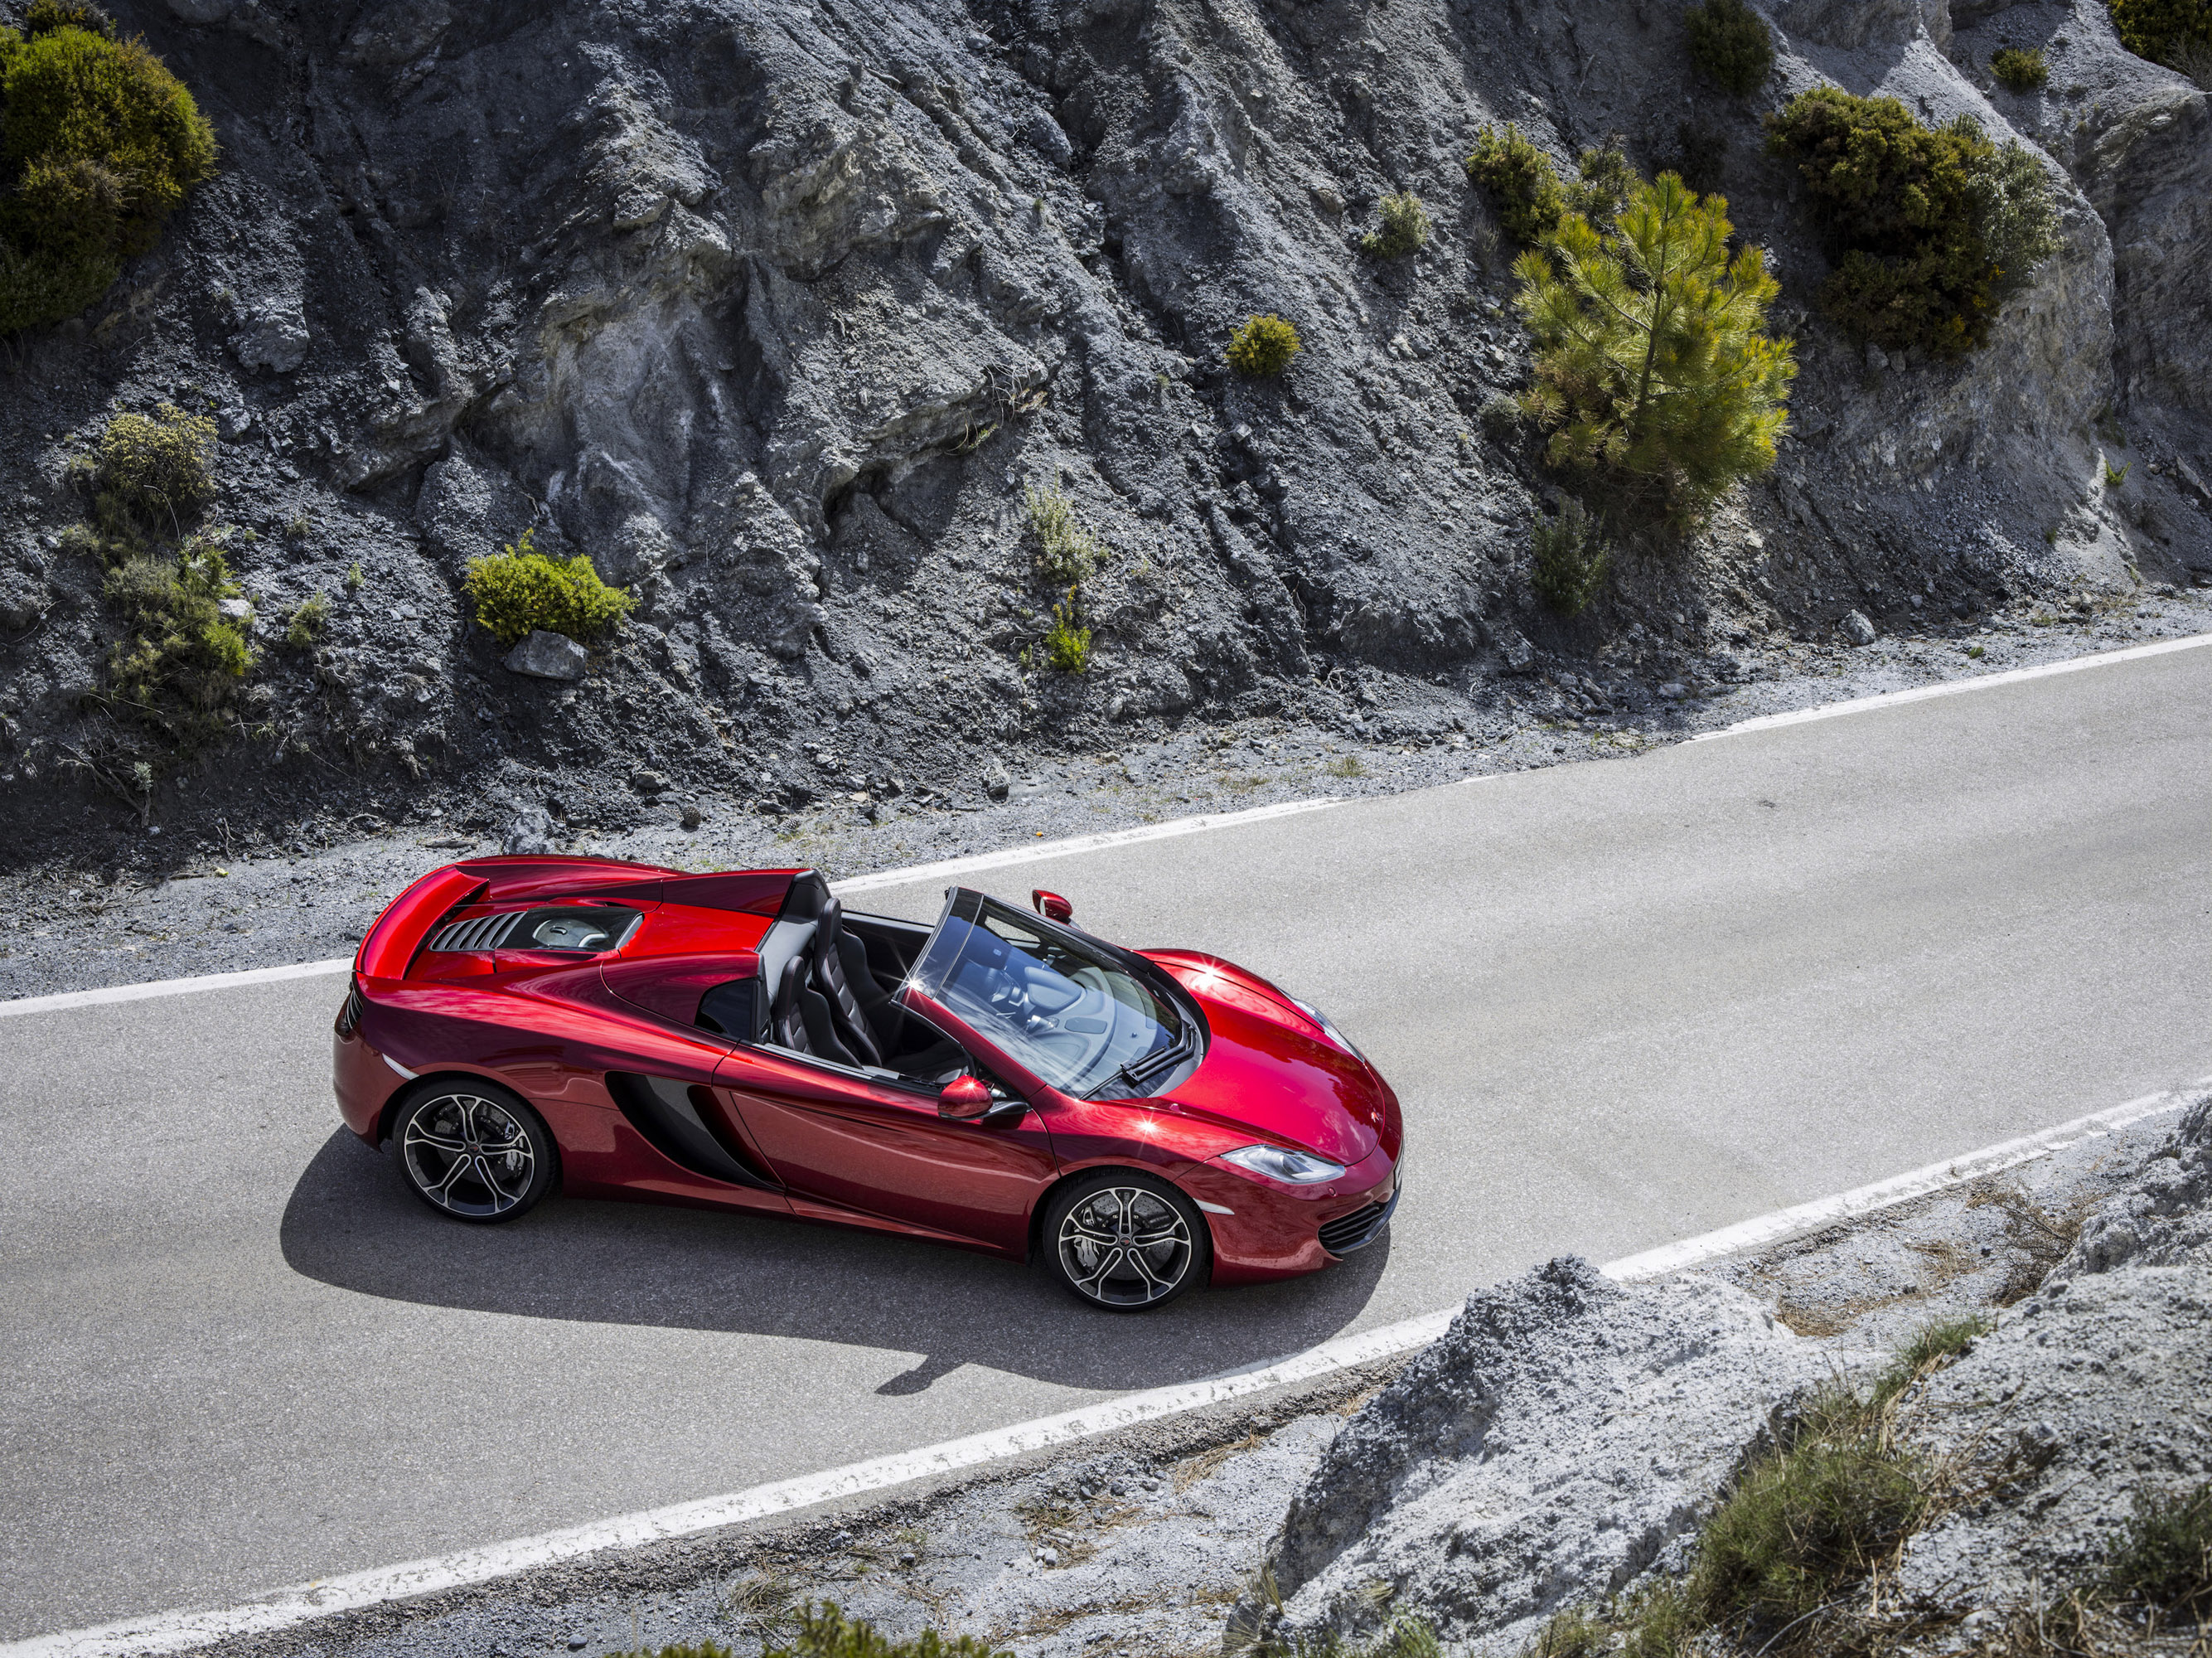 McLaren 12C, Auto beauty, Open-top thrill, Speed sensation, 2670x2000 HD Desktop